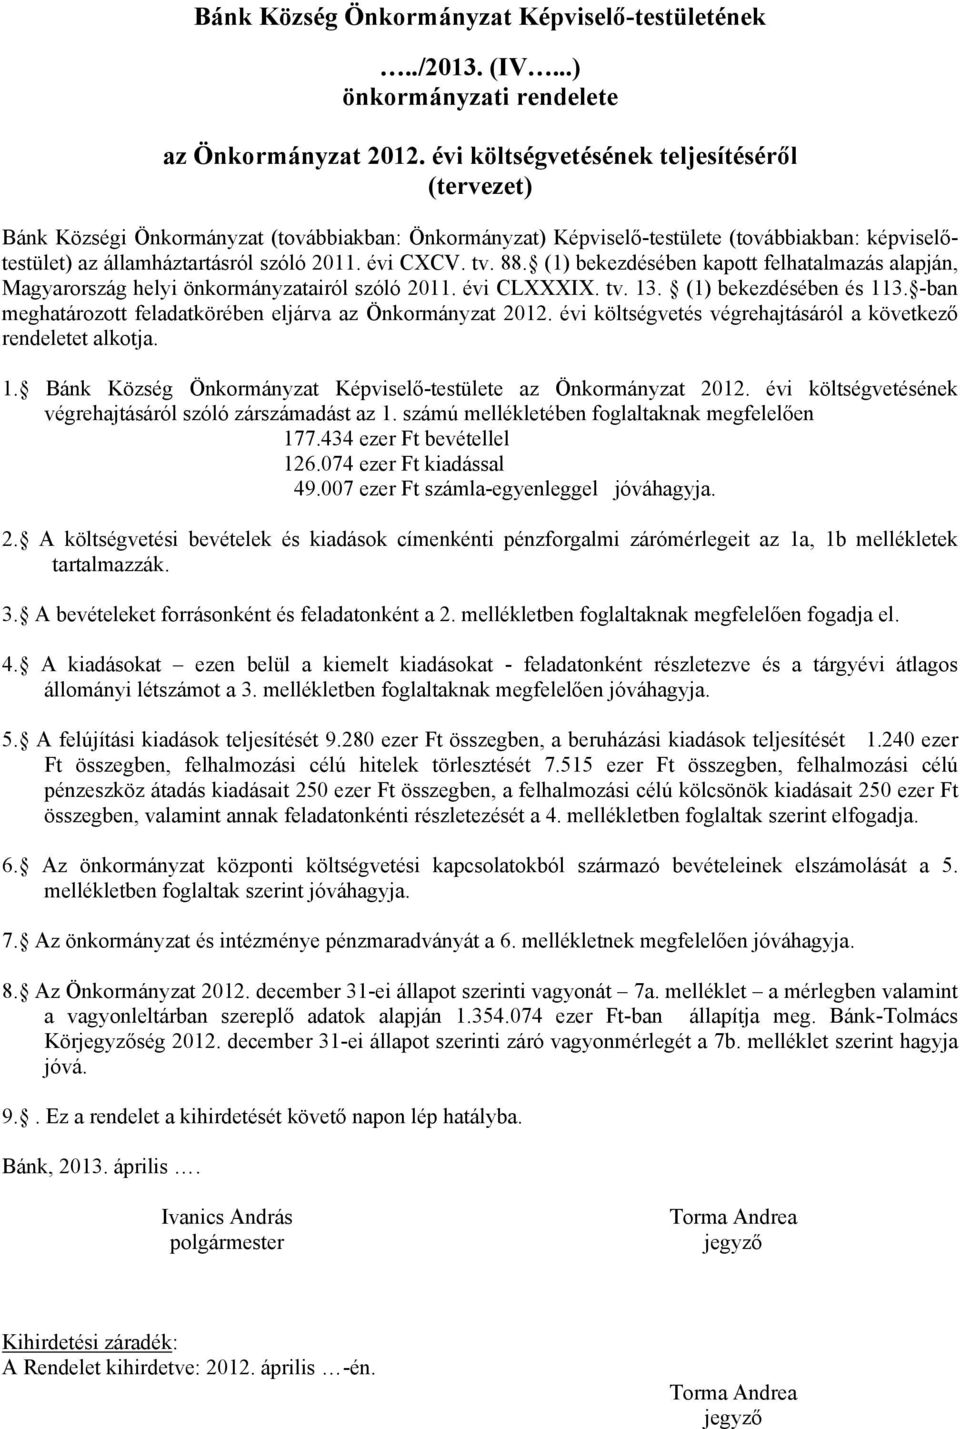 tv. 88. (1) bekezdésében kapott felhatalmazás alapján, Magyarország helyi önkormányzatairól szóló 2011. évi CLXXXIX. tv. 13. (1) bekezdésében és 113.